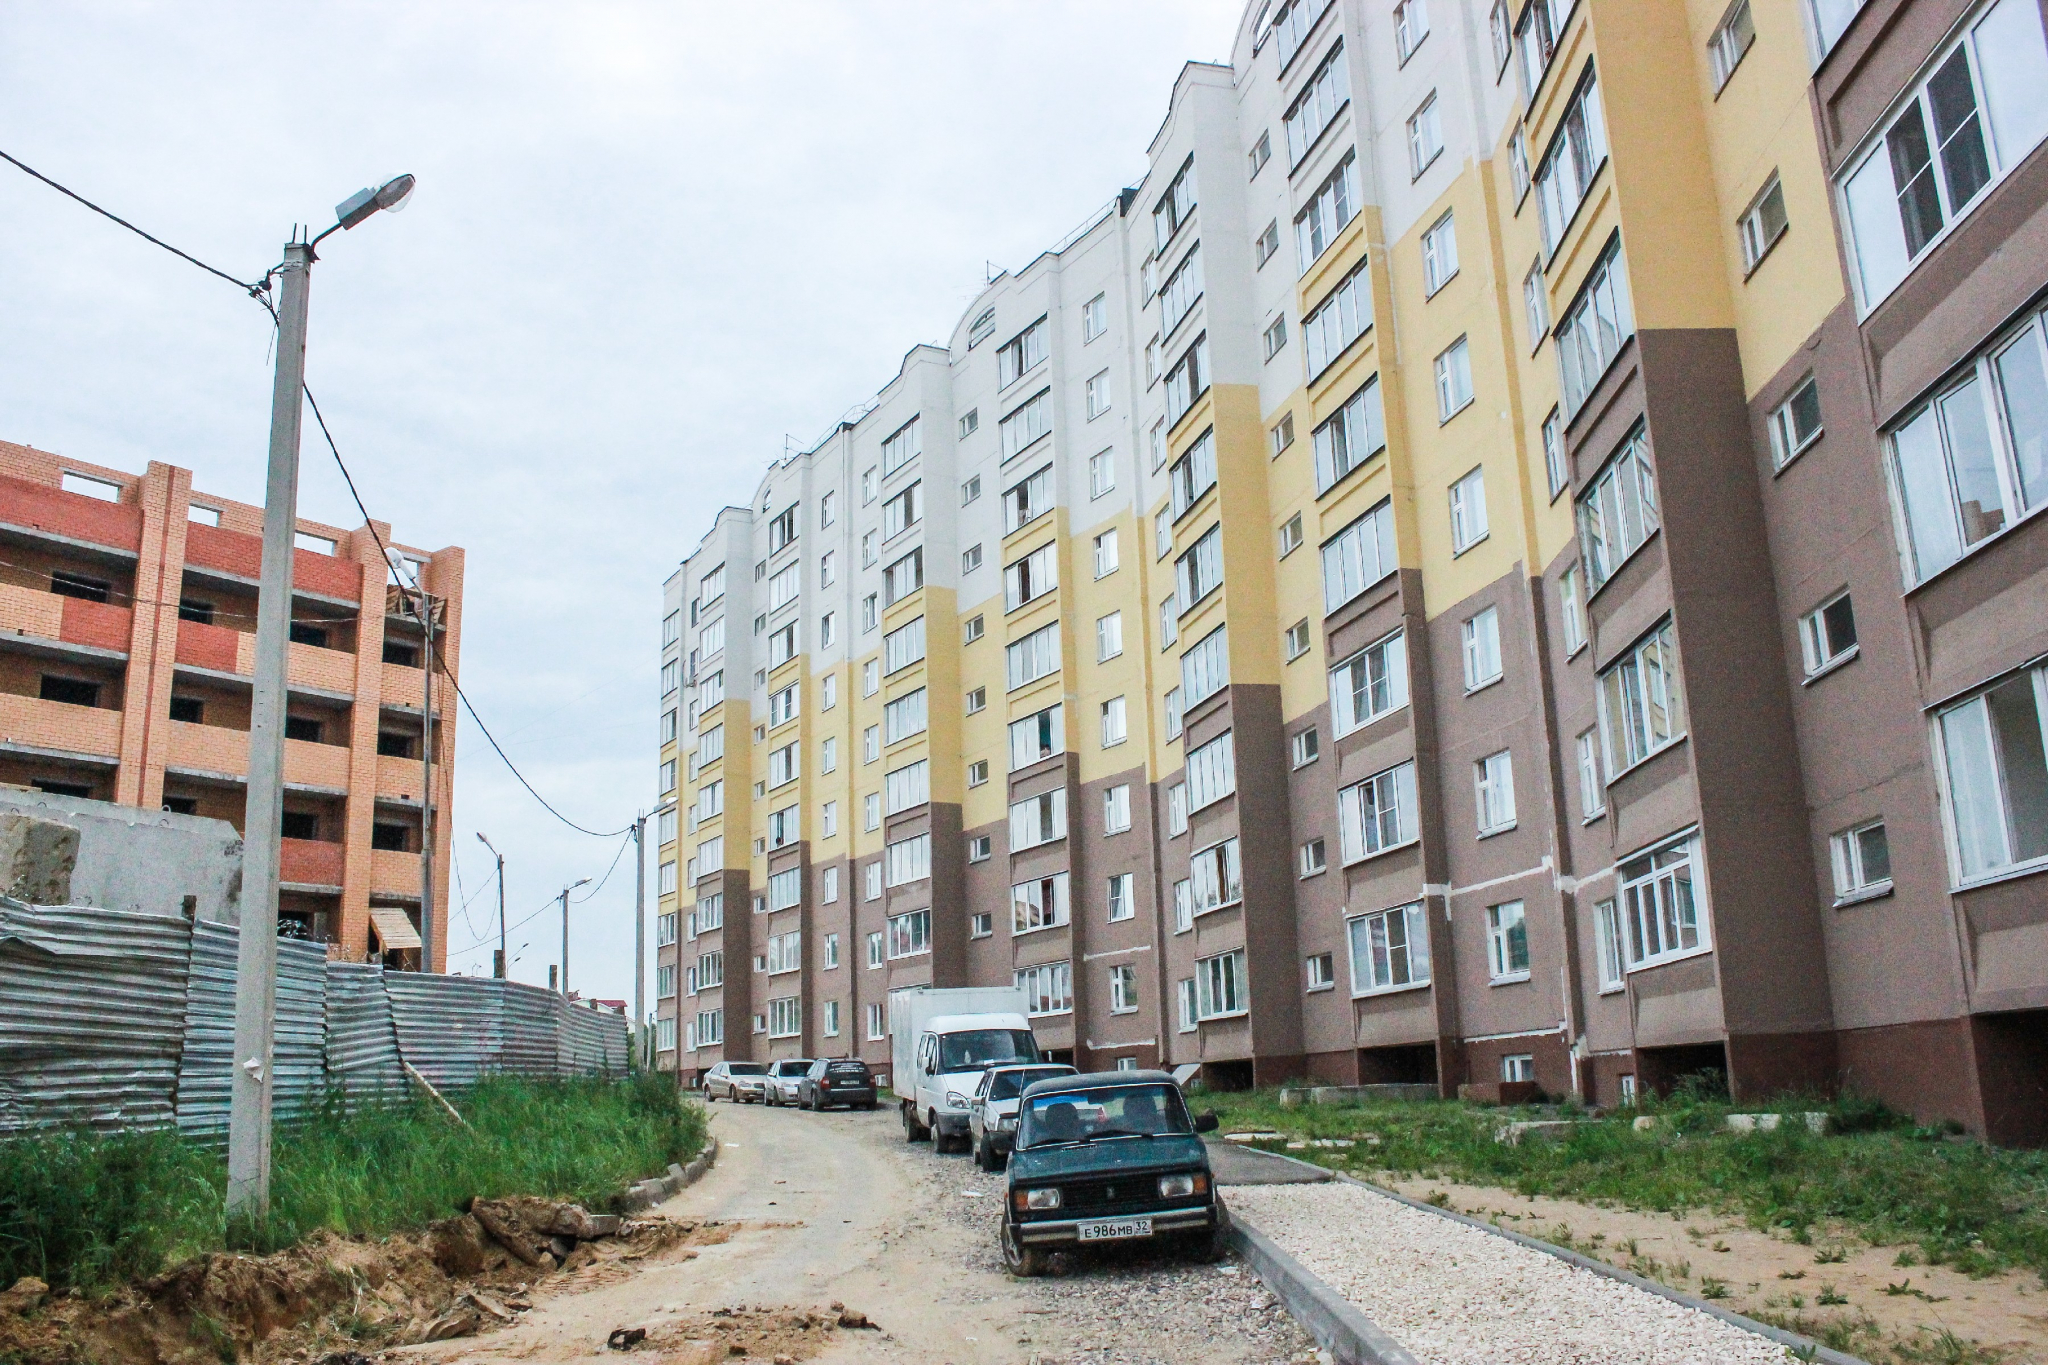 Новости России: Рынку ипотеки пообещали беспрецедентный рост 